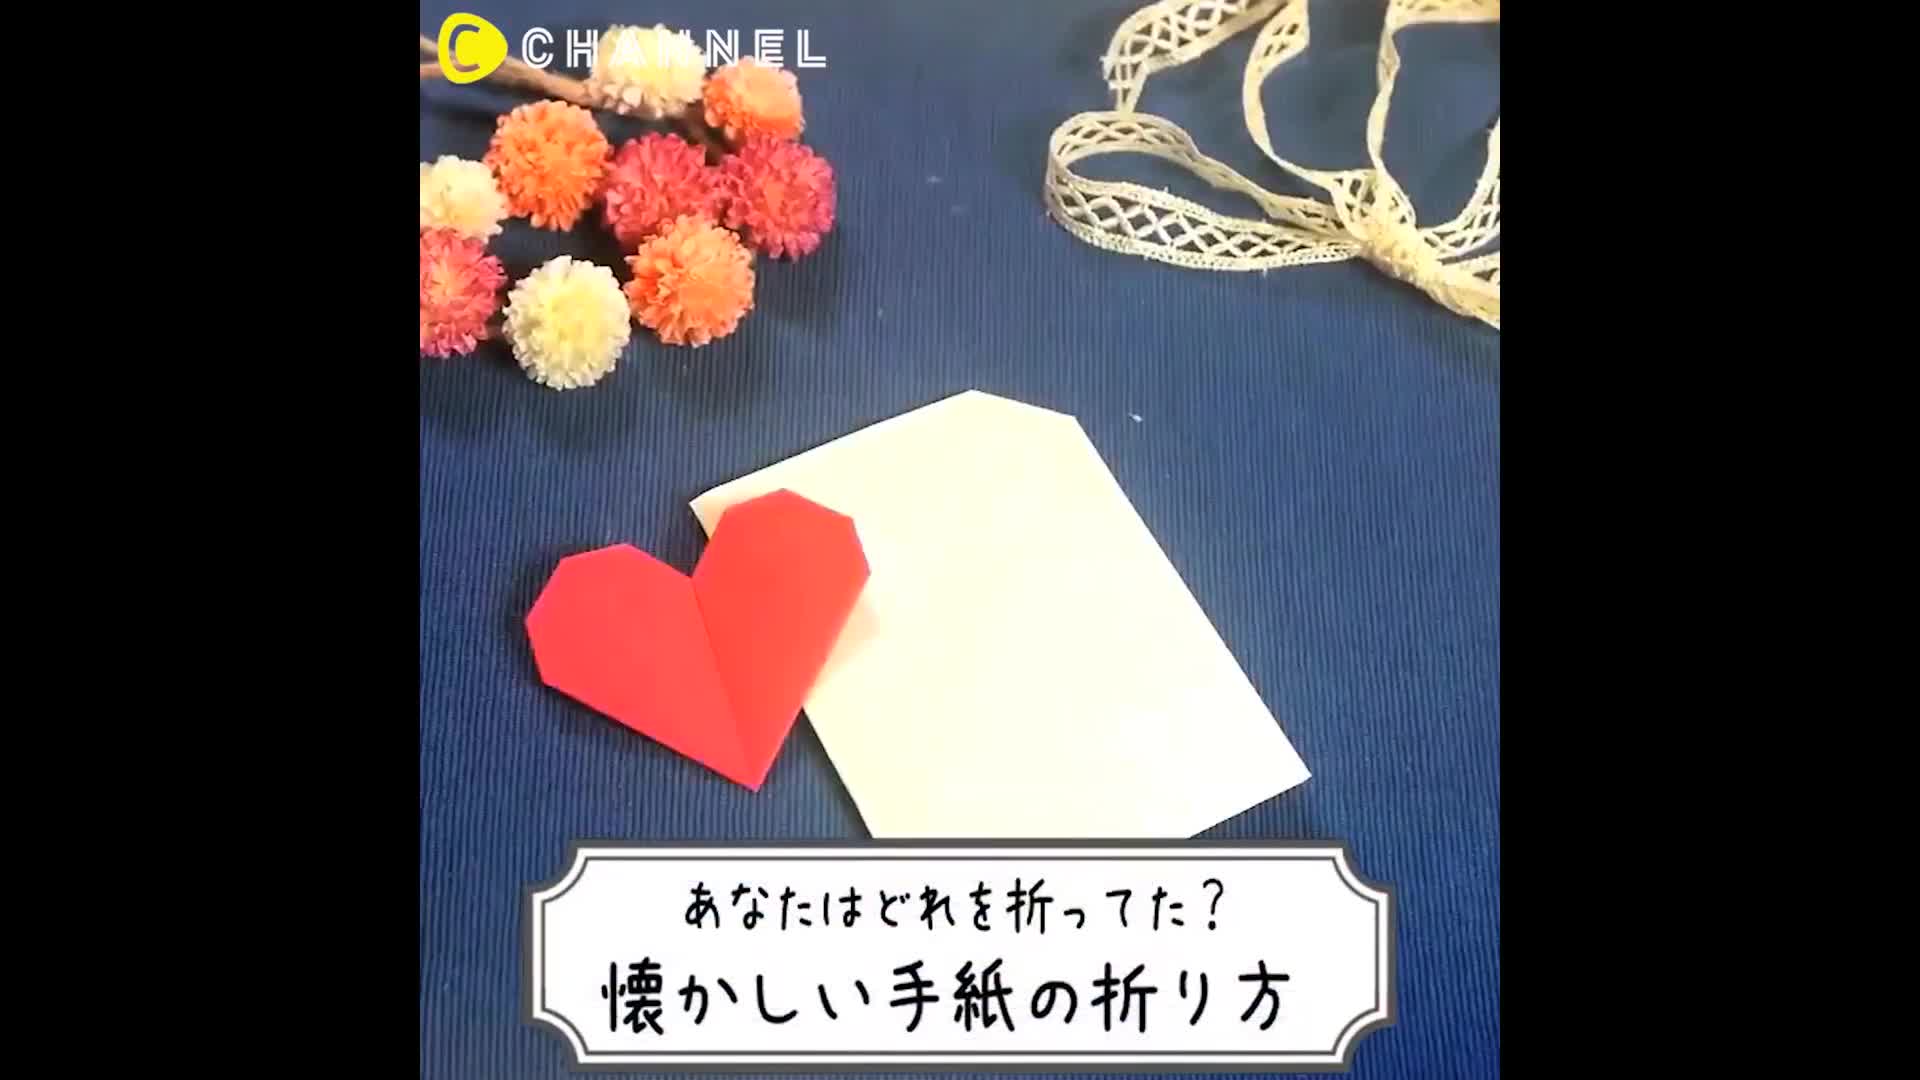 折り紙の折り方あるある 懐かしの遊びを振り返ろう C Channel Yahoo Japan